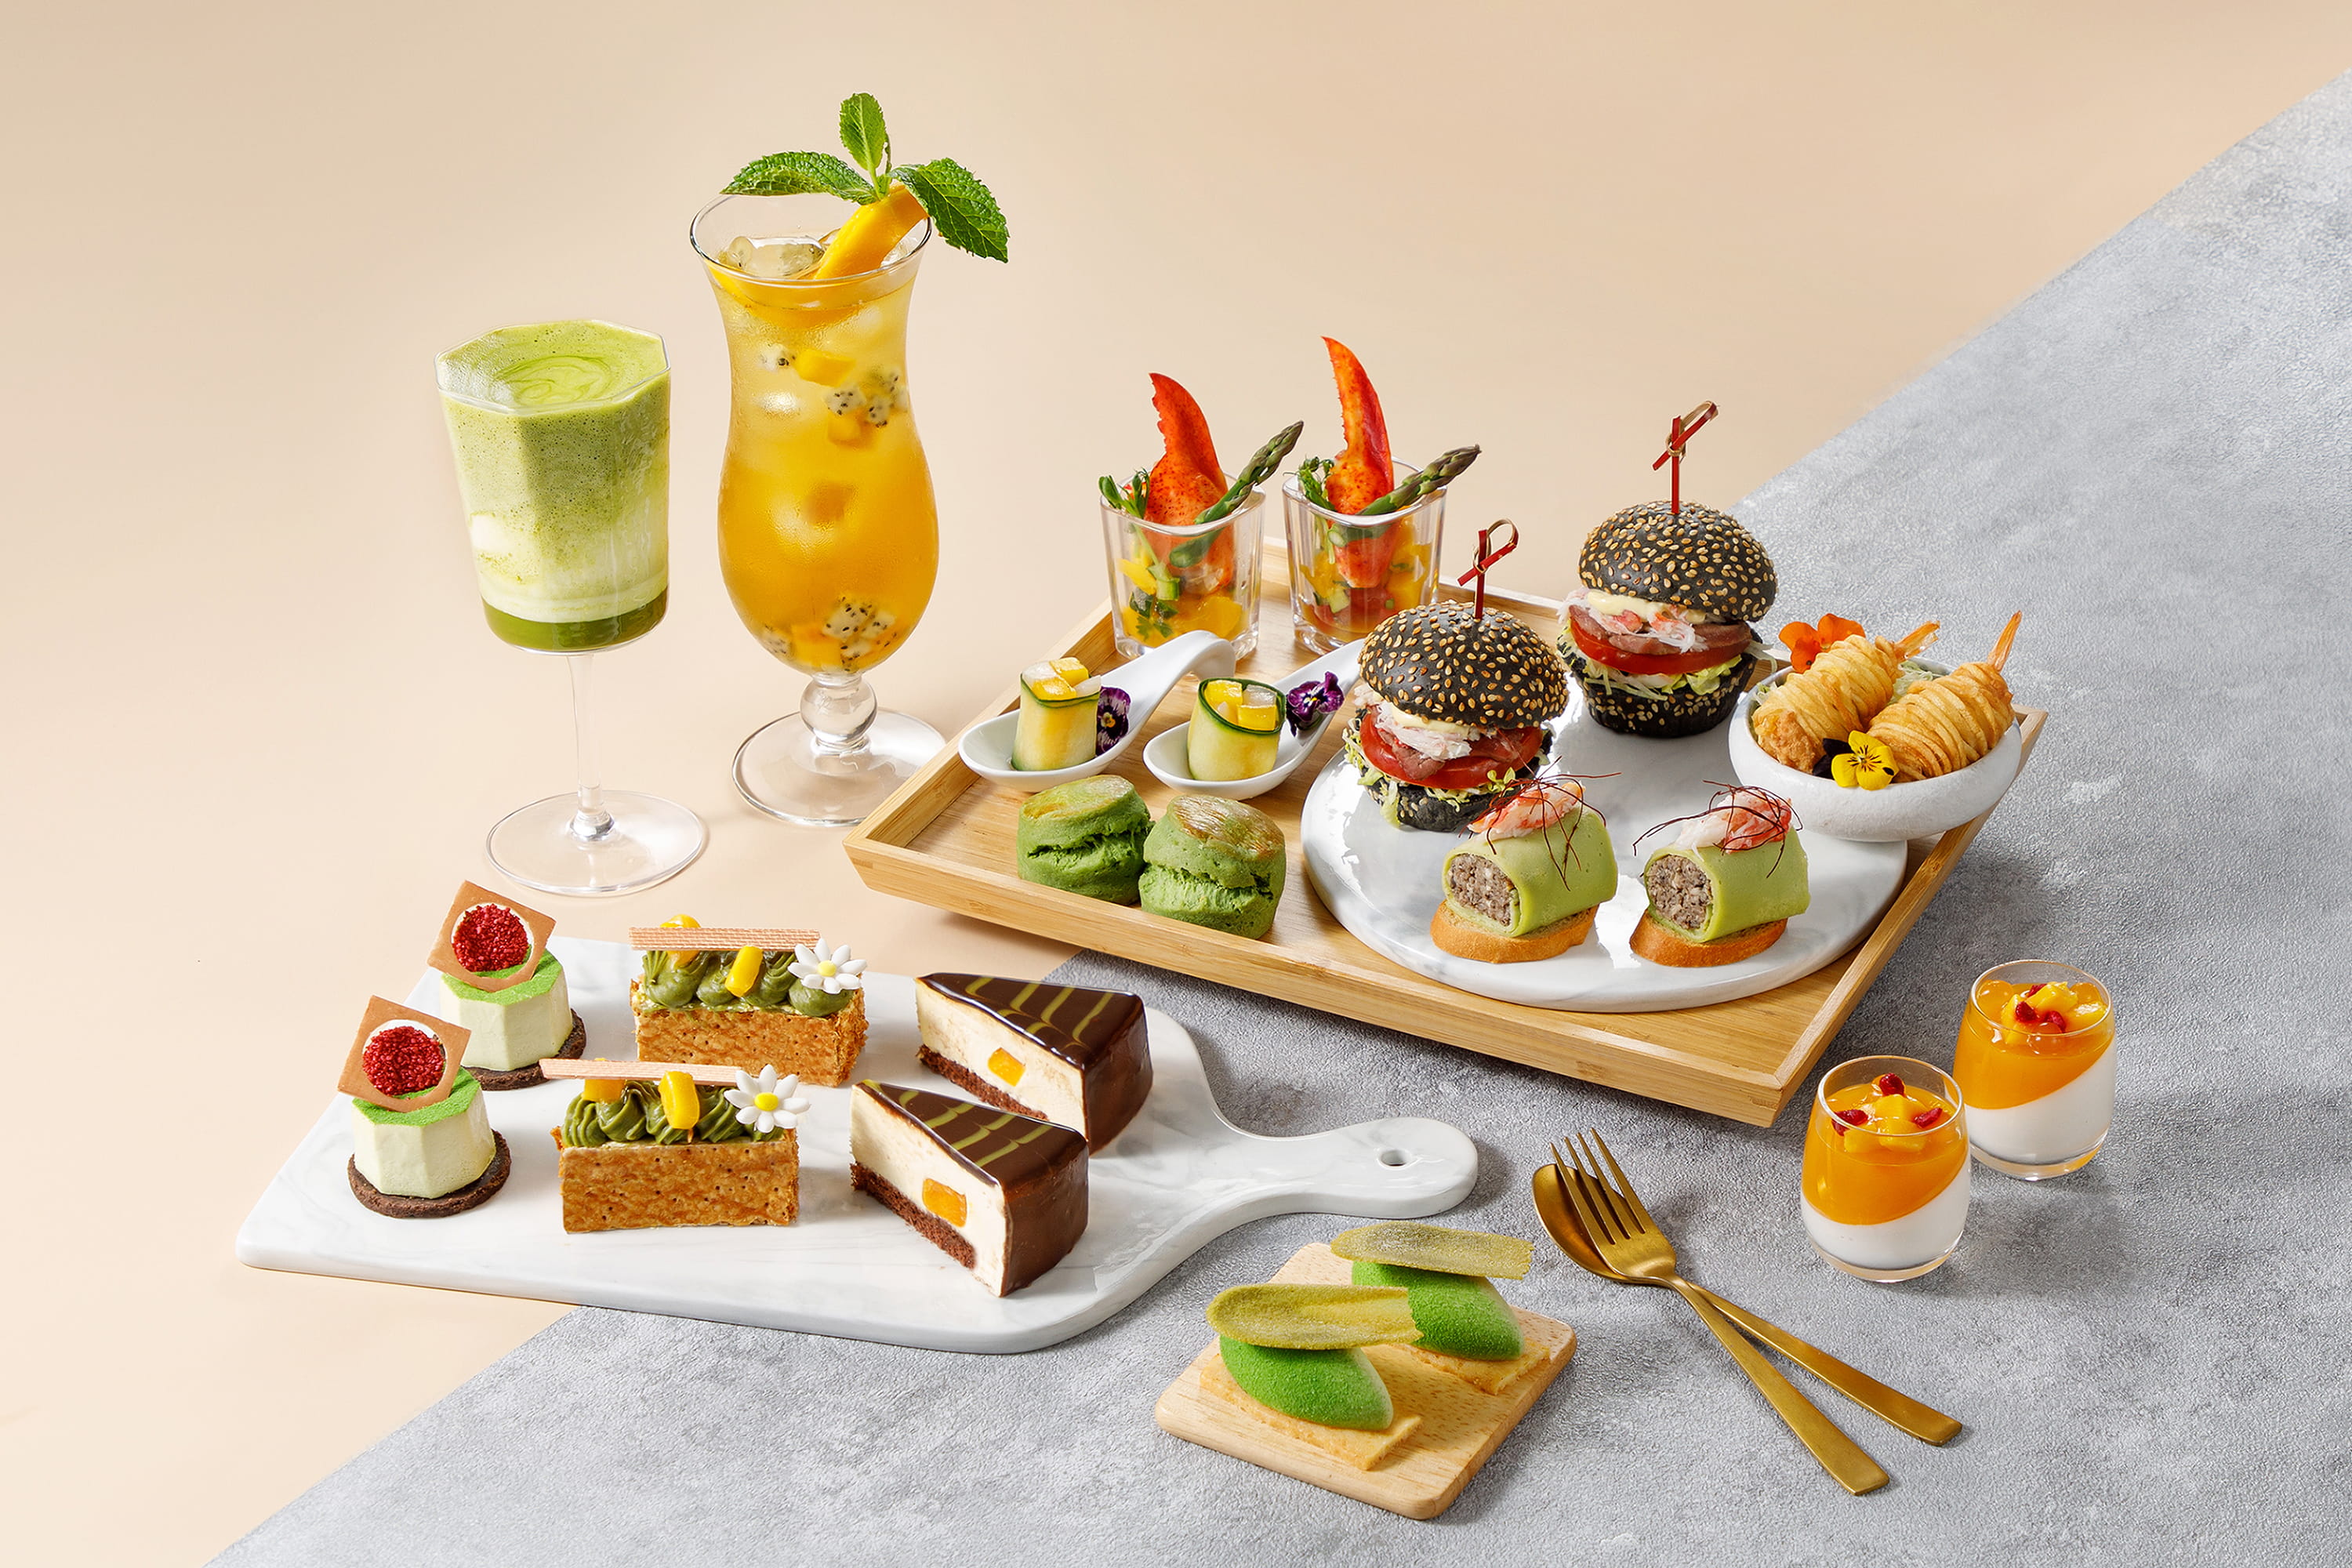 Matcha and Mango Afternoon Tea Set at Park Hotel Hong Kong